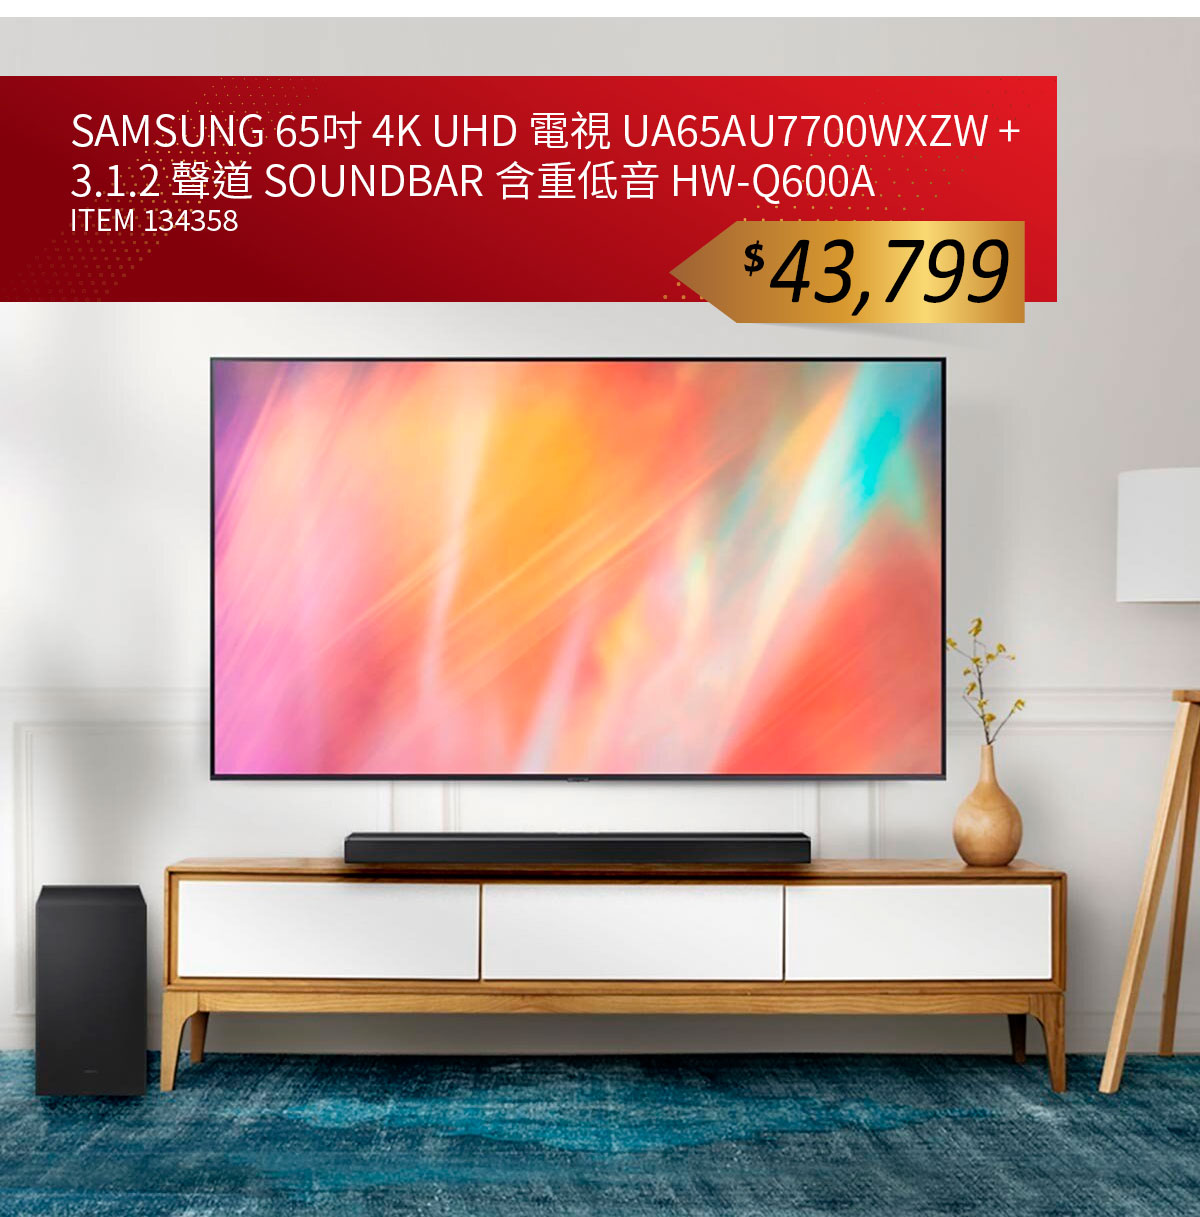 SAMSUNG 65吋 4K UHD 電視 UA65AU7700WXZW + 3.1.2 聲道 SOUNDBAR 含重低音 HW-Q600A